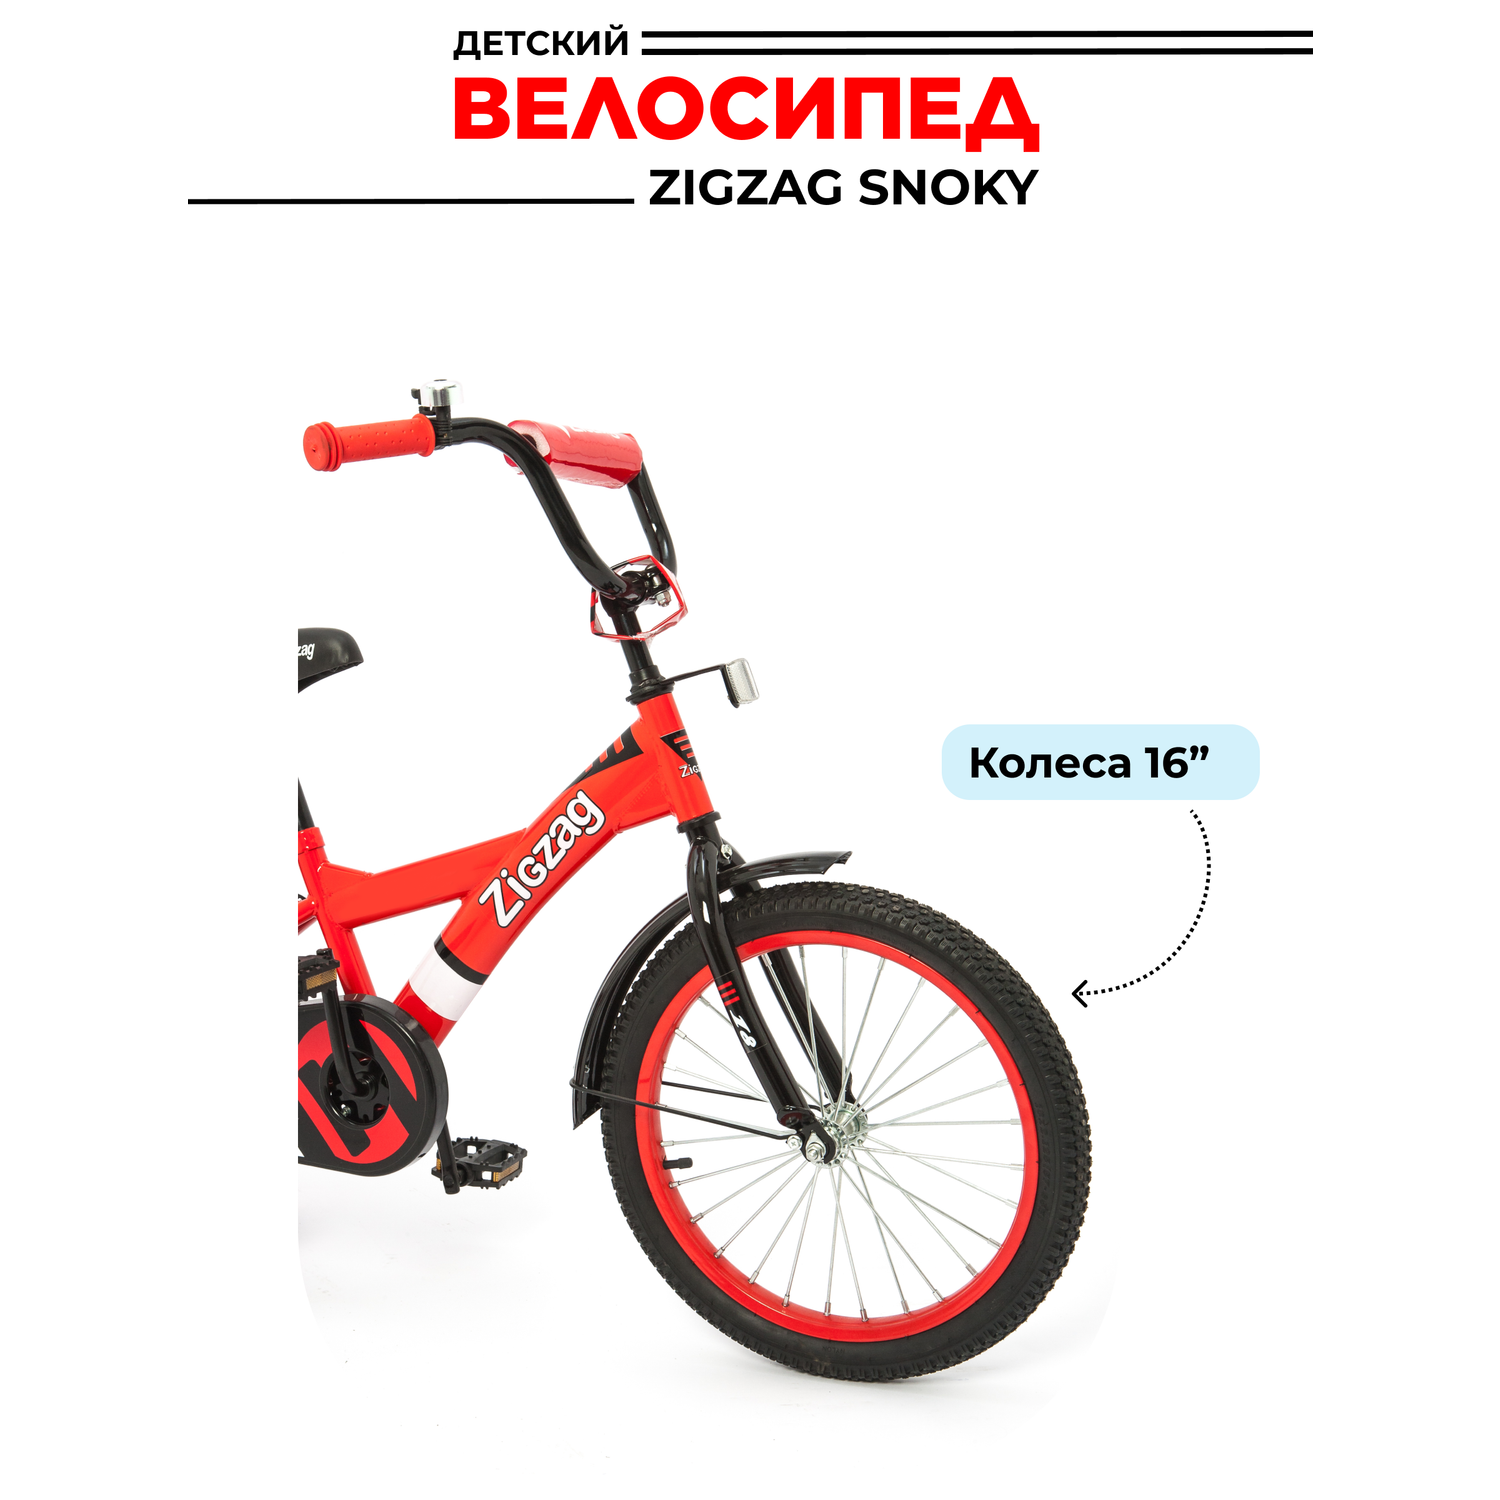 Велосипед ZigZag SNOKY красный 16 дюймов - фото 2